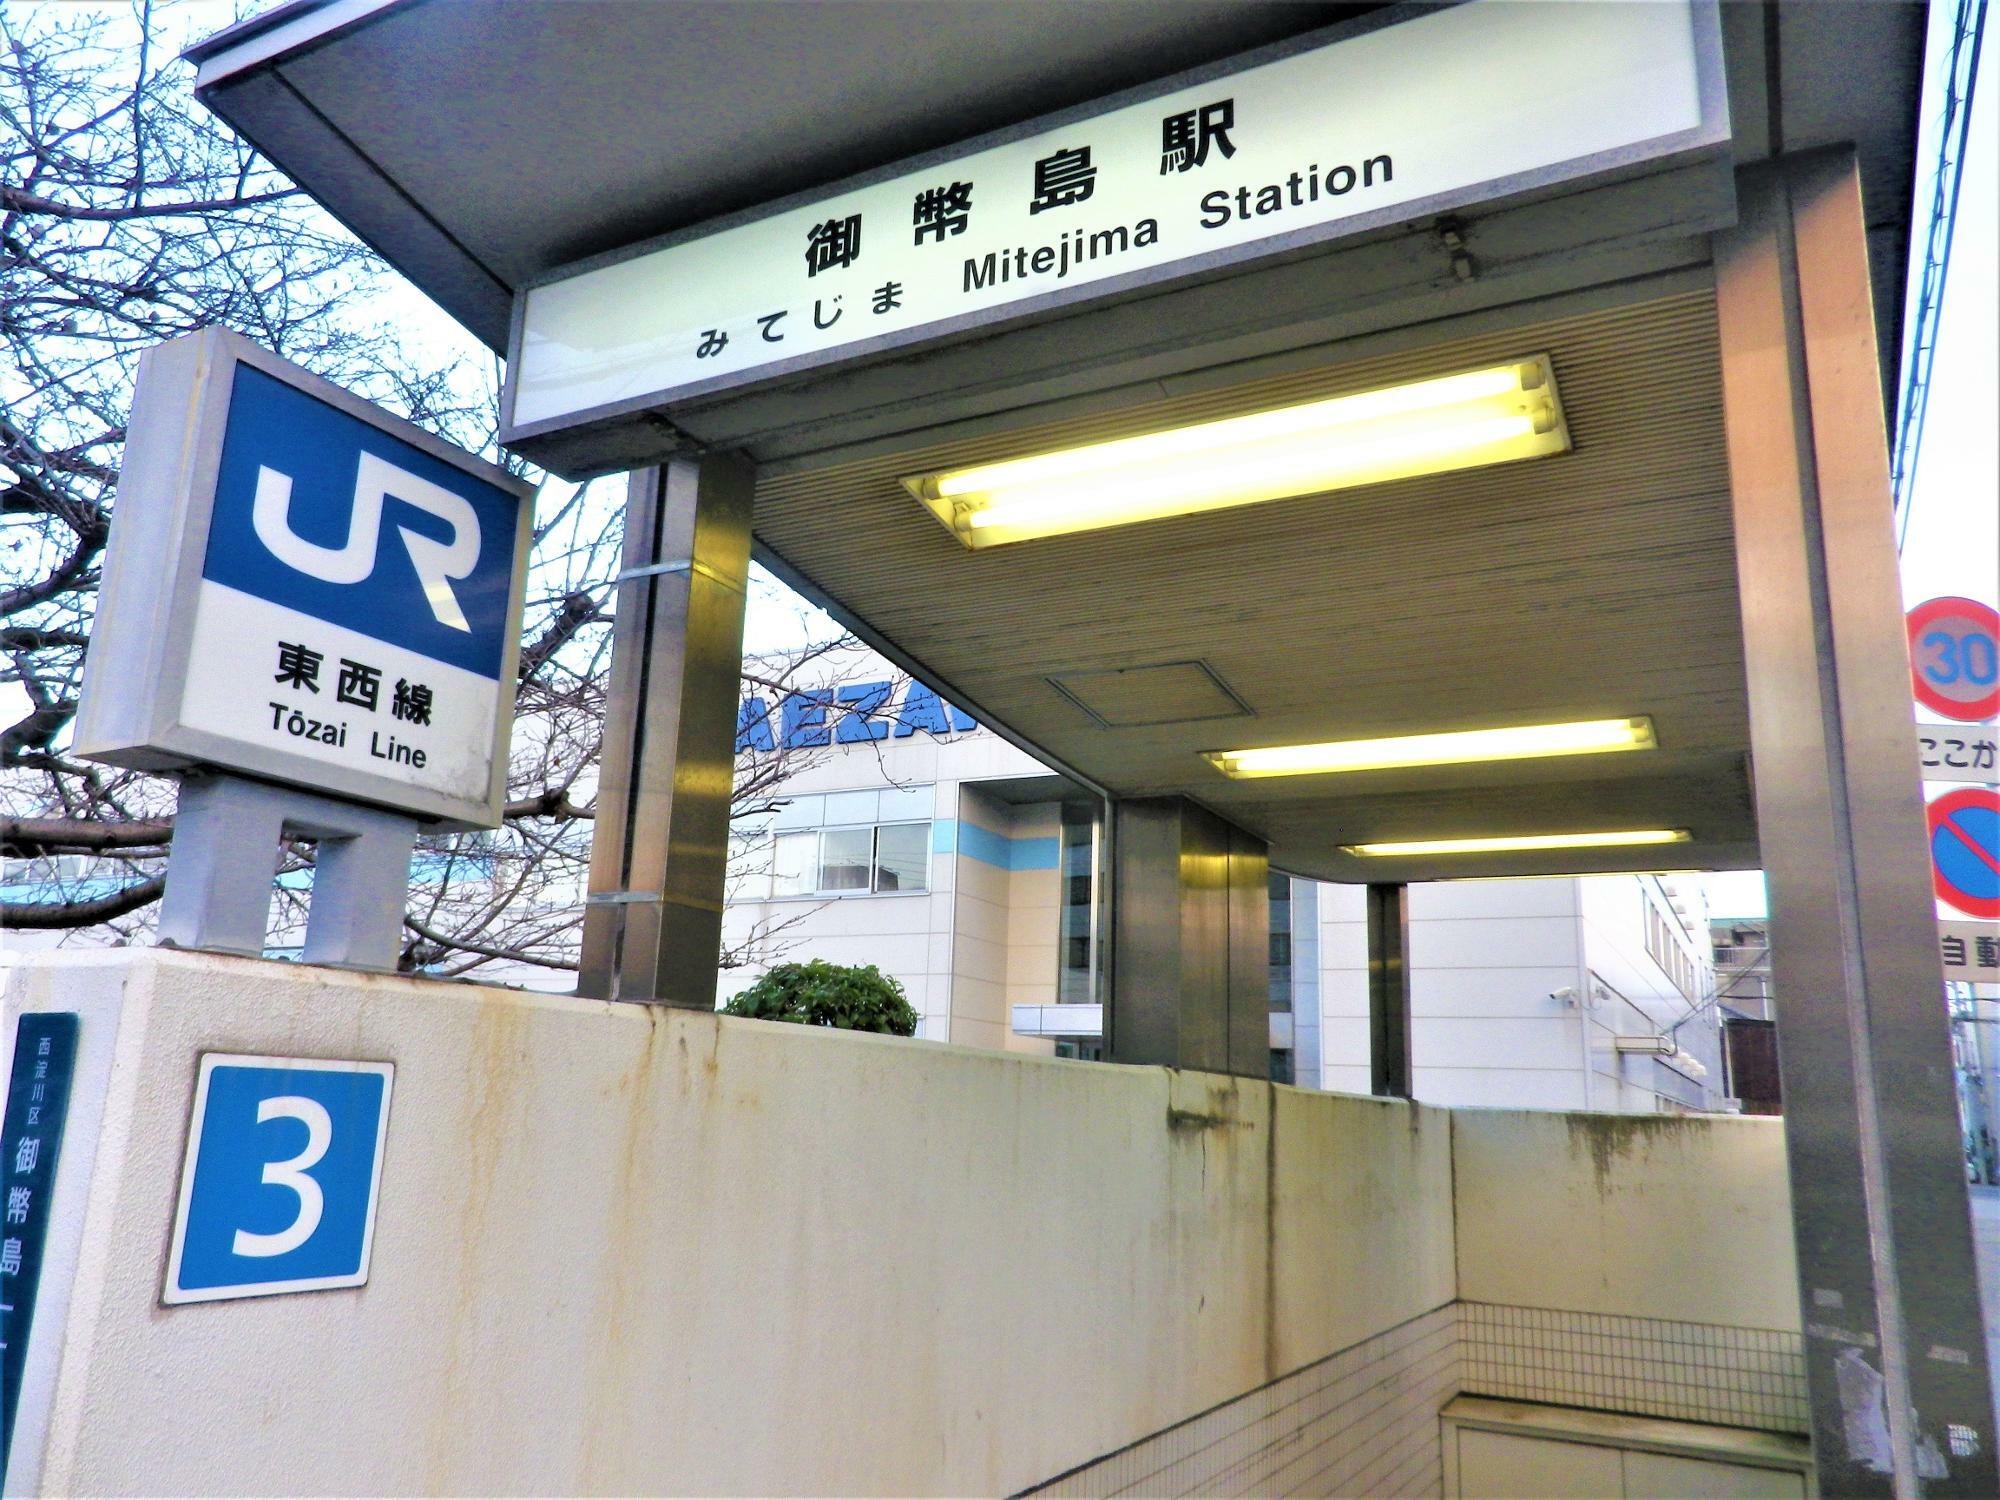 大阪市内の北新地駅へ続く路線です。